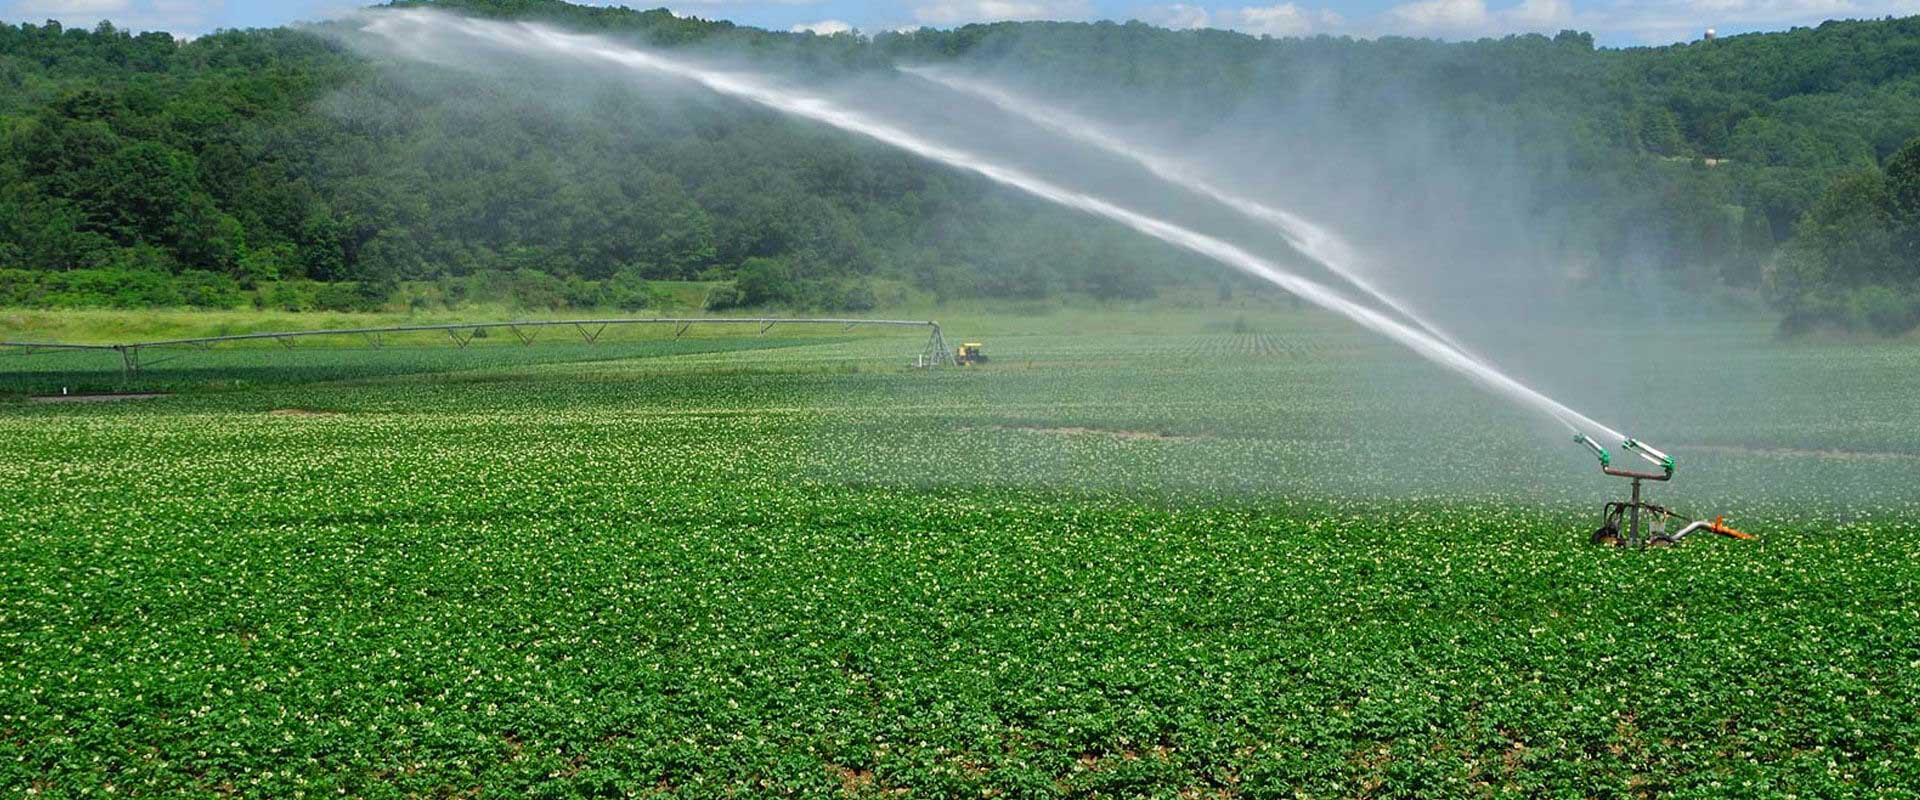 سیستم آبیاری تحت فشار در مزارع